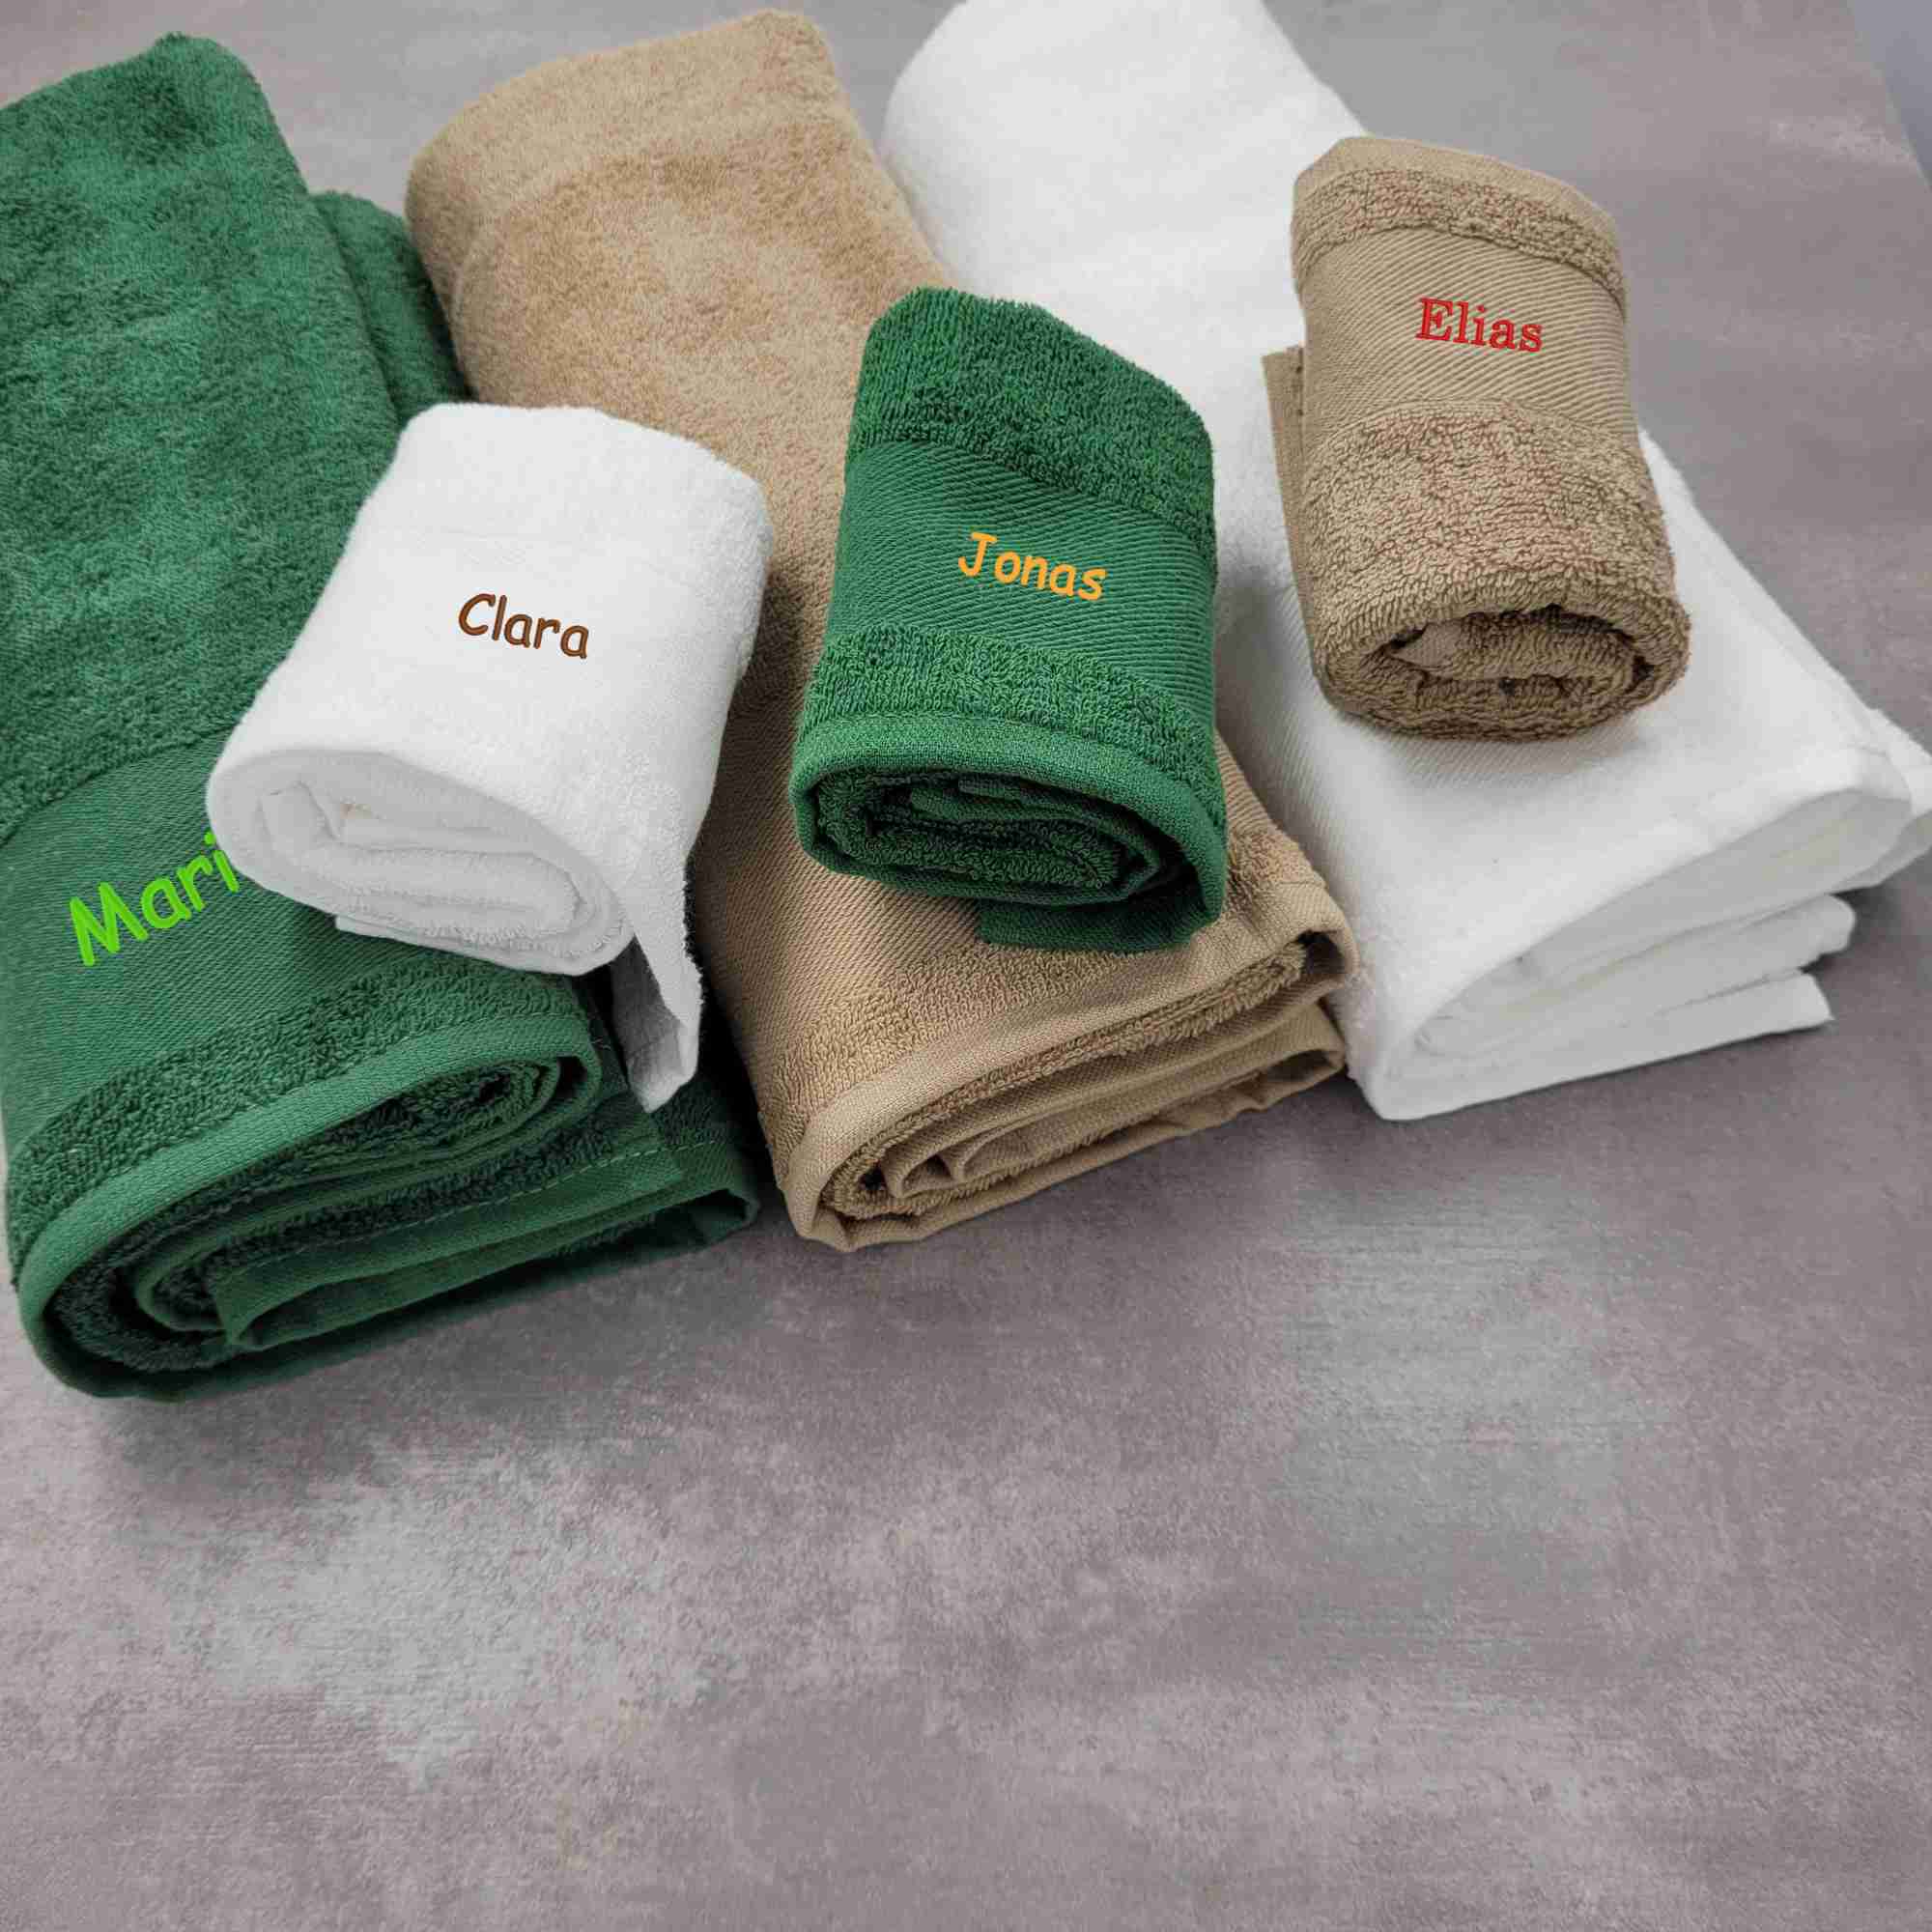 Bestickte Handtücher in allen Größen und Farben mit Namen oder Initialien bestickt